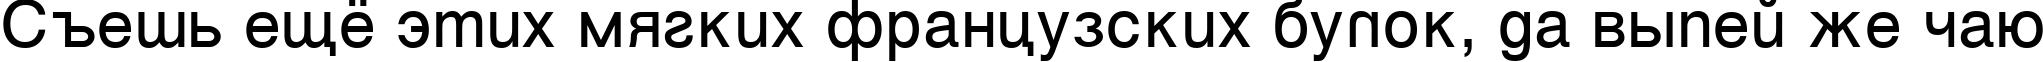 Пример написания шрифтом Vanta Medium Plain:001.001 текста на русском